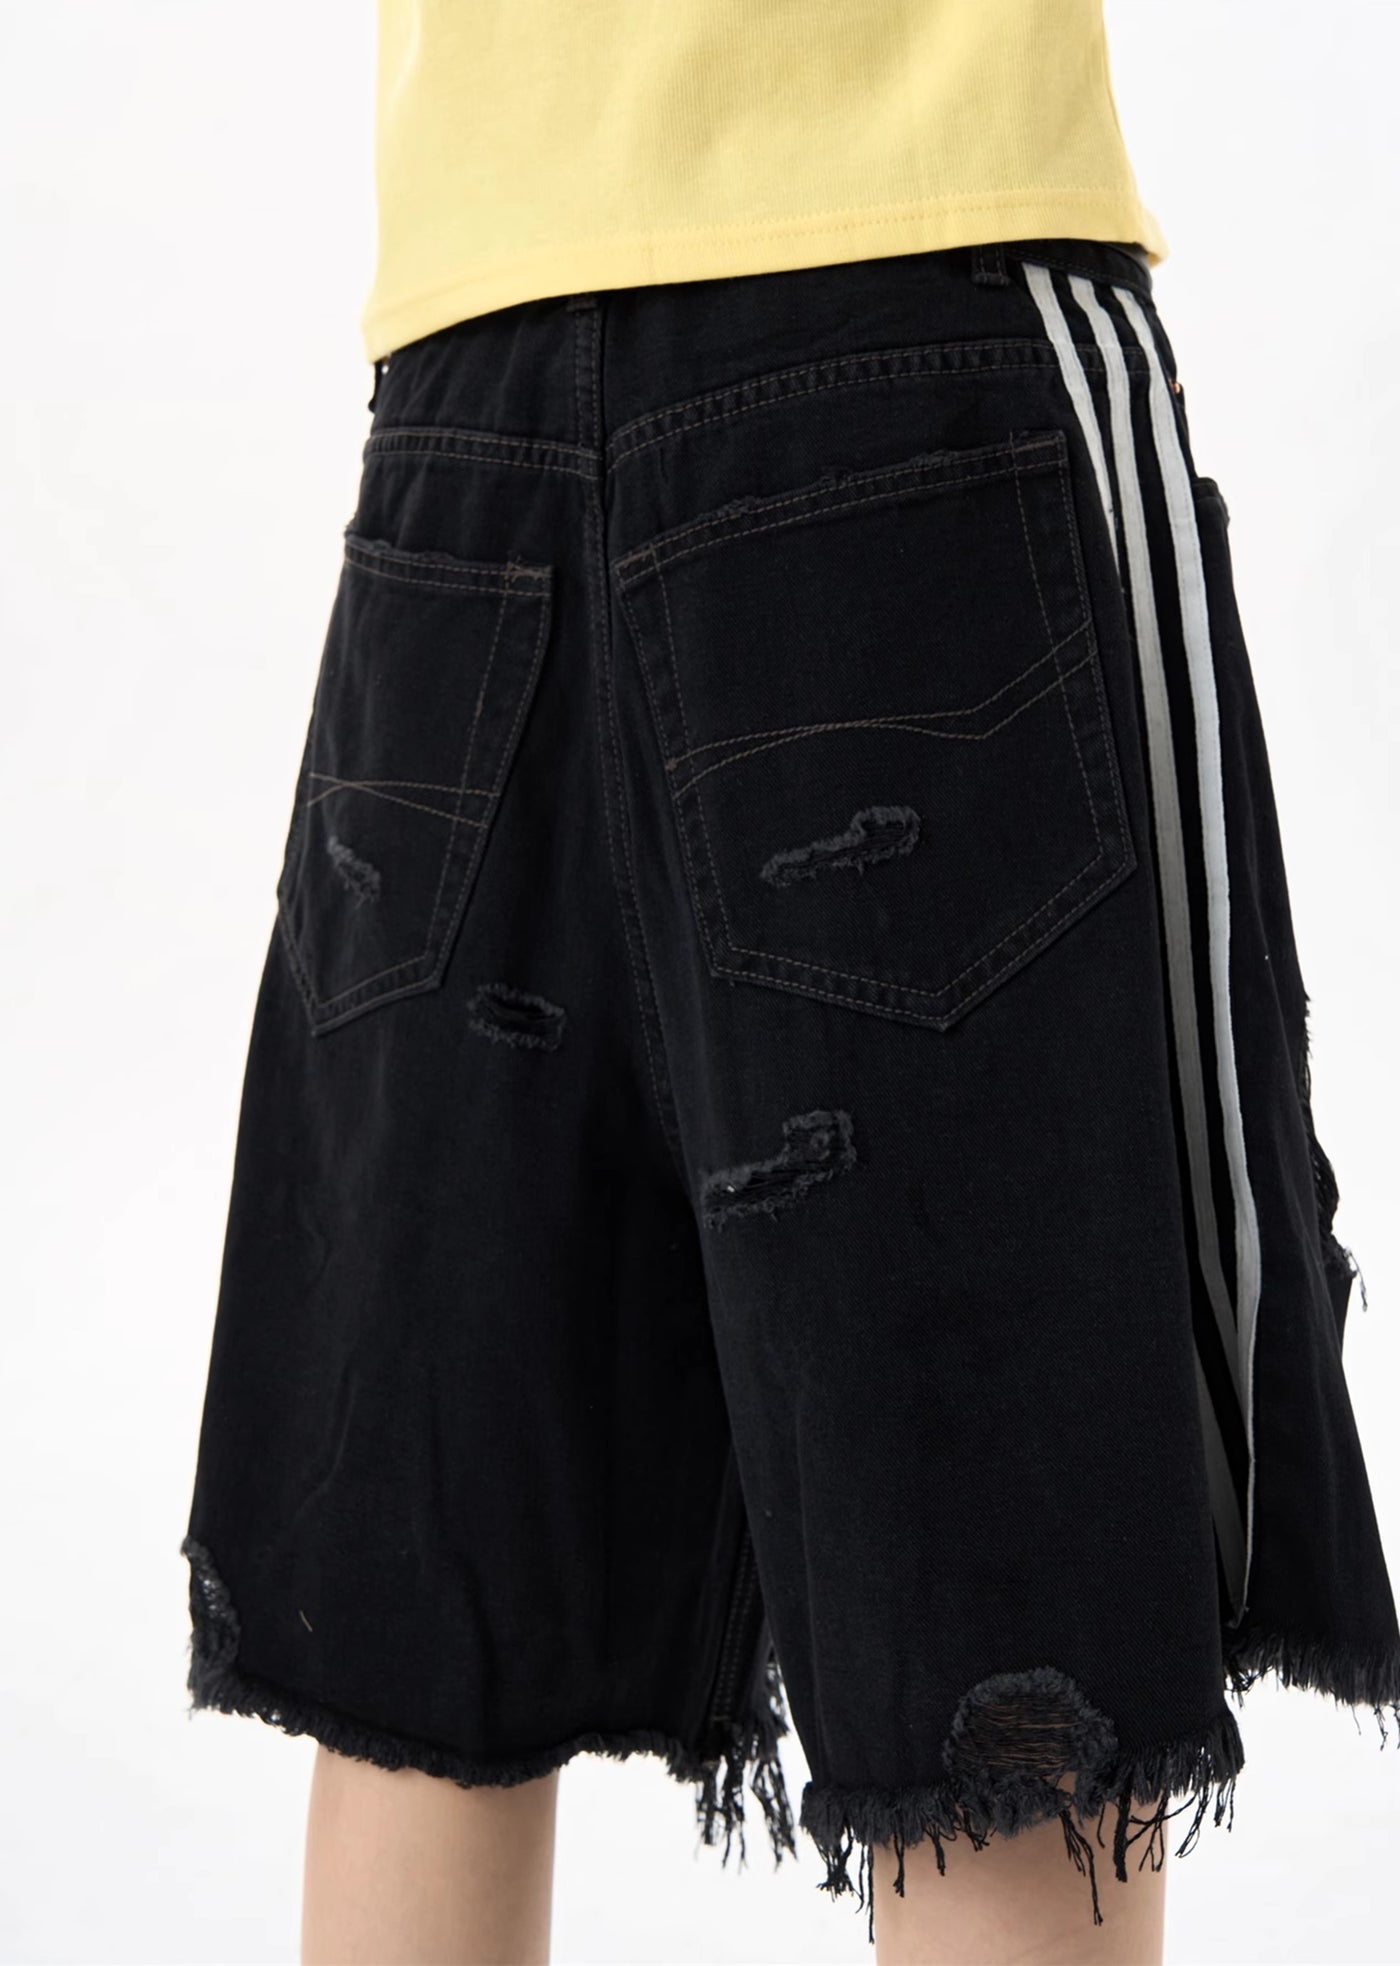 【MAXDSTR】Middle distressed hem point design black denim shorts  MD0136